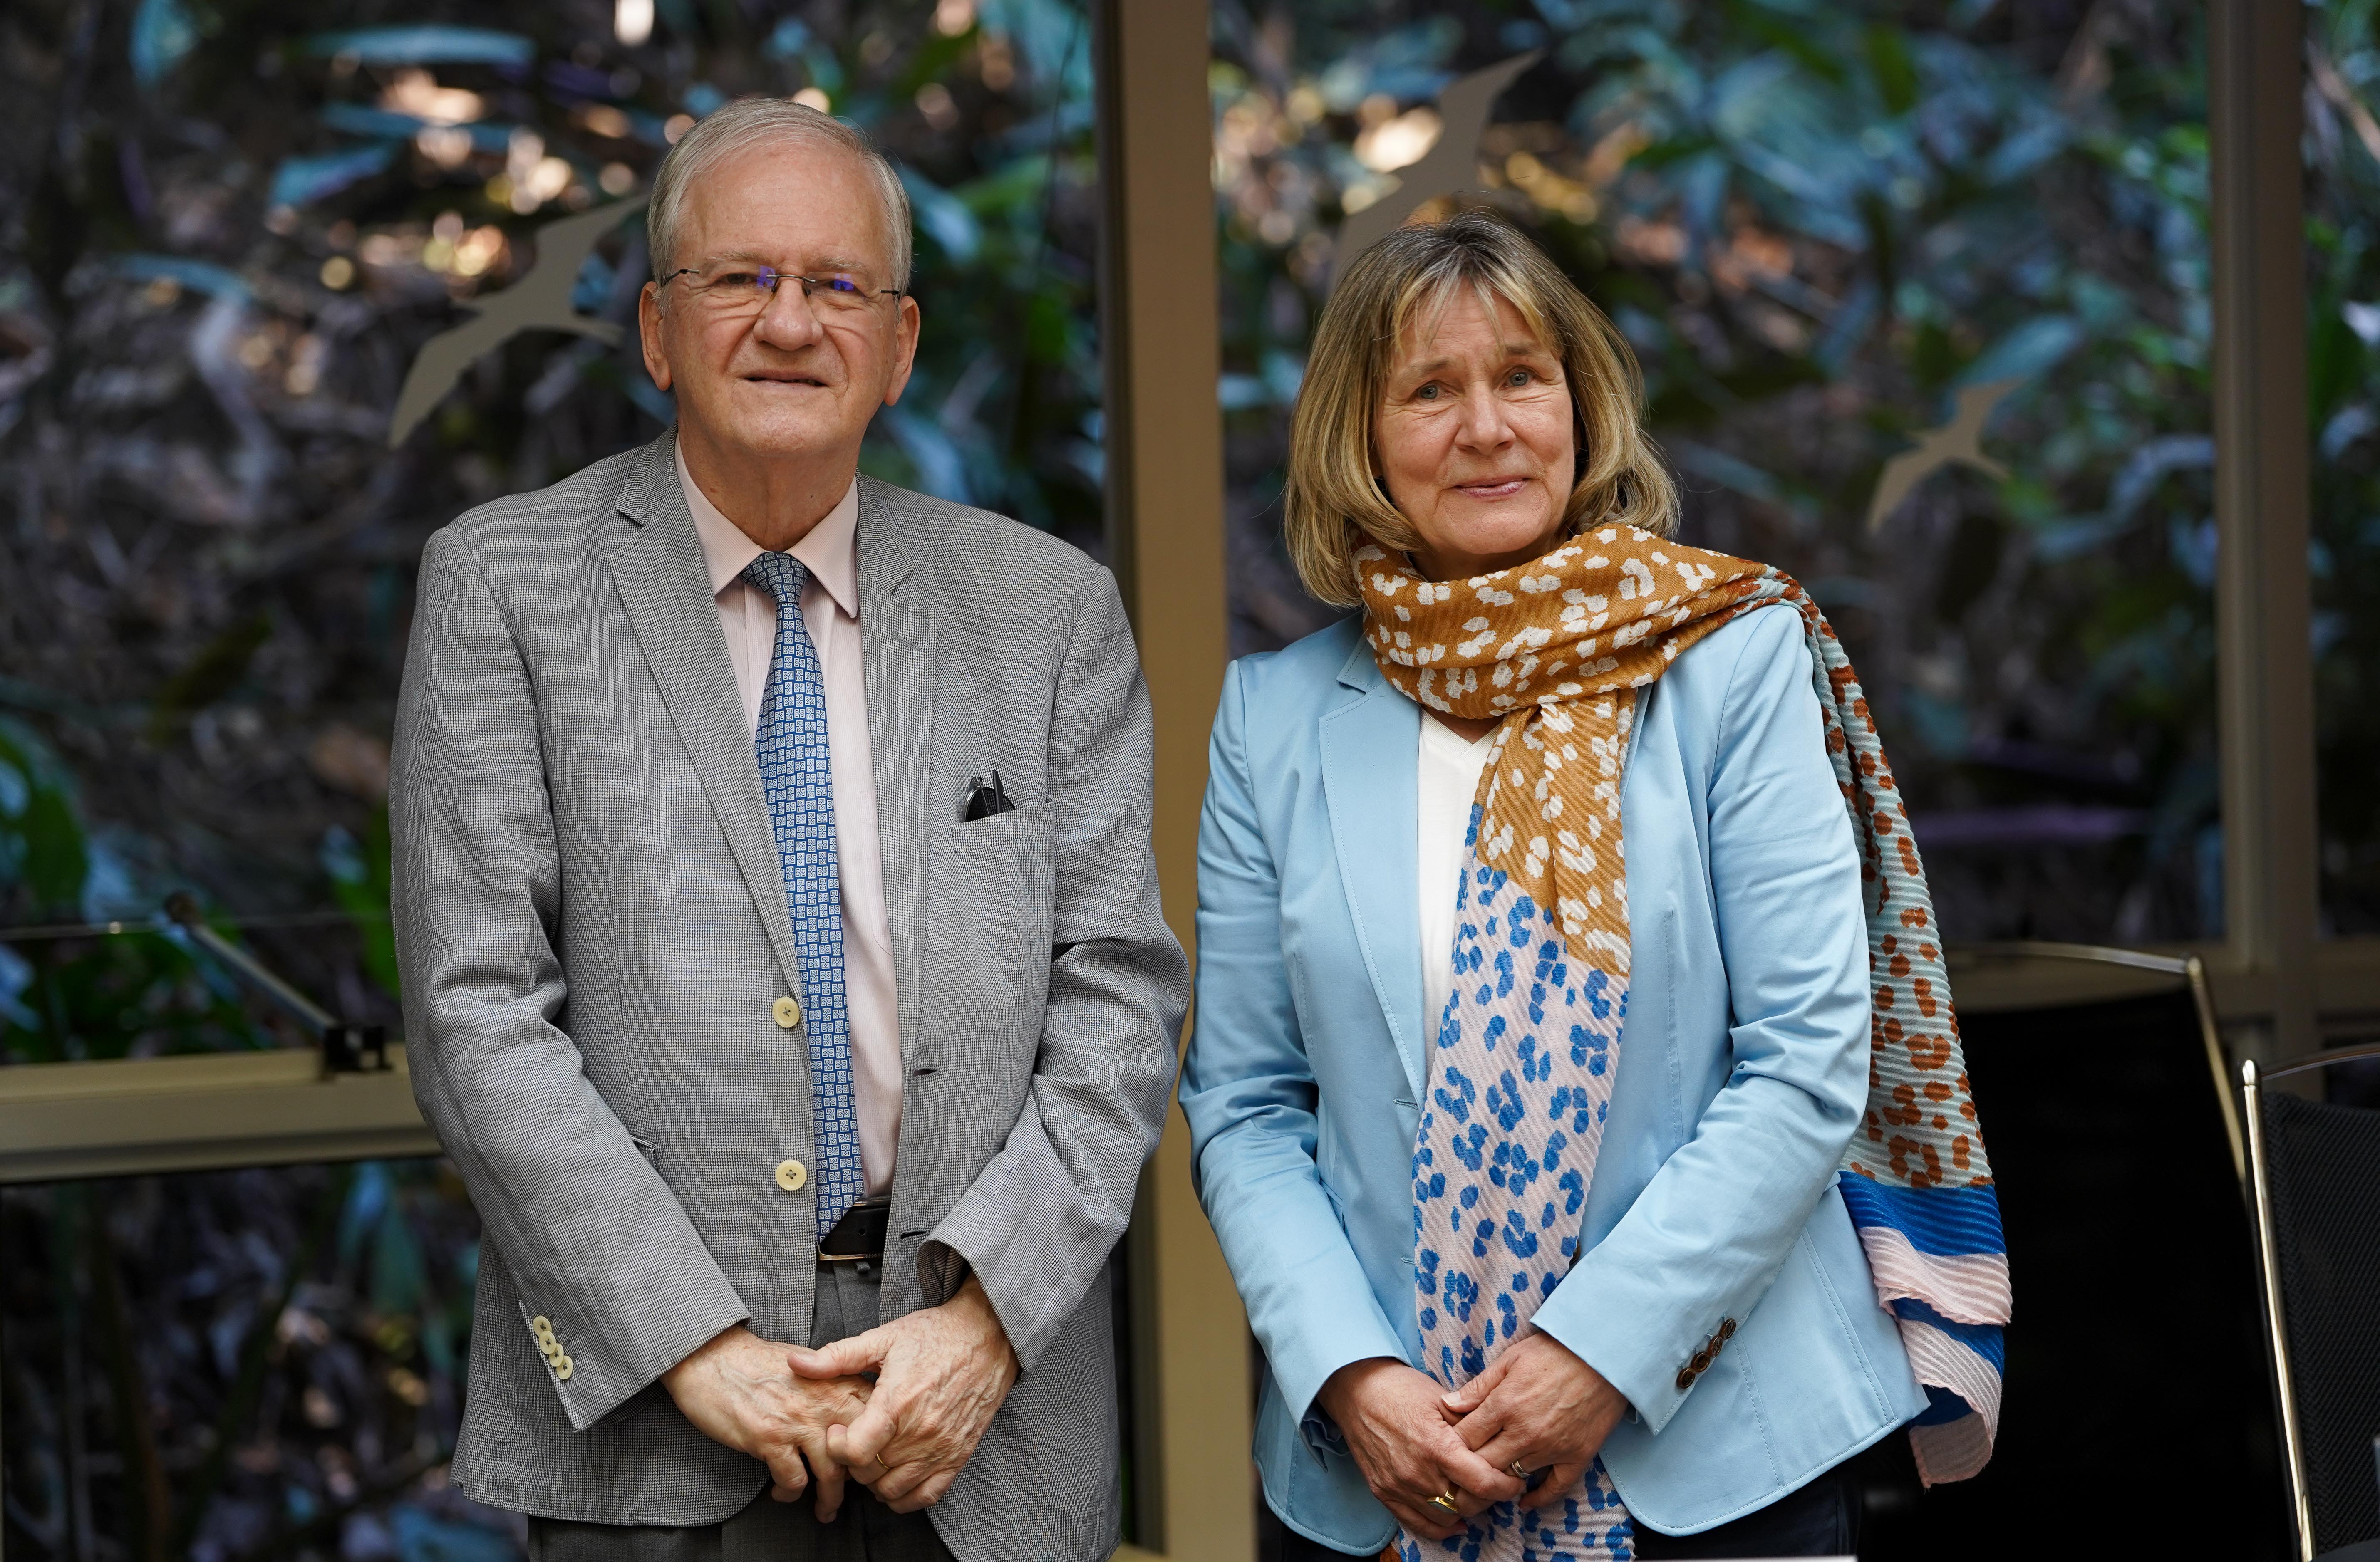 Prof. Dr. Marco Antonio Zago und Dr. Heide Ahrens posieren gemeinsam.